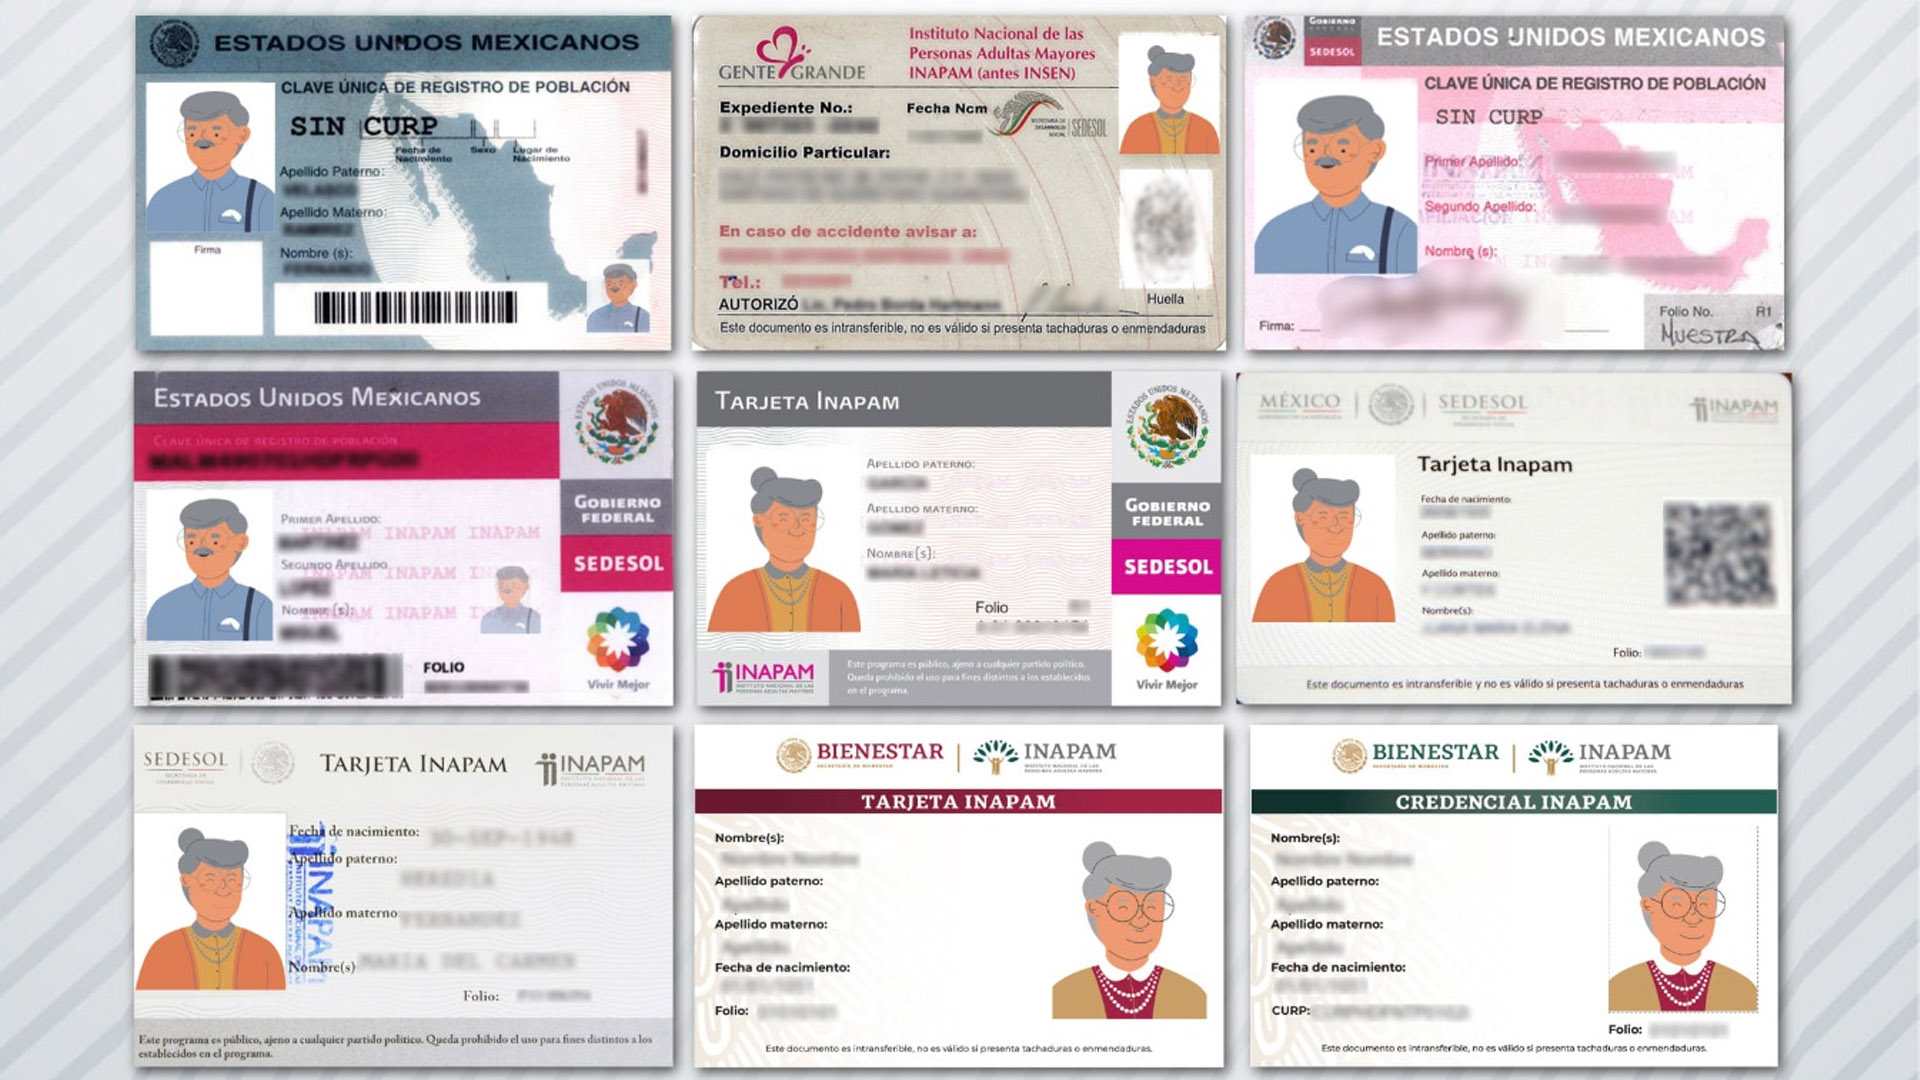 El Instituto Nacional de las Personas Adultas Mayores (INAPAM) señaló que los 9 diseños de la credencial para adultos mayores son vigentes y válidos (Foto: @INAPAM / Twitter)